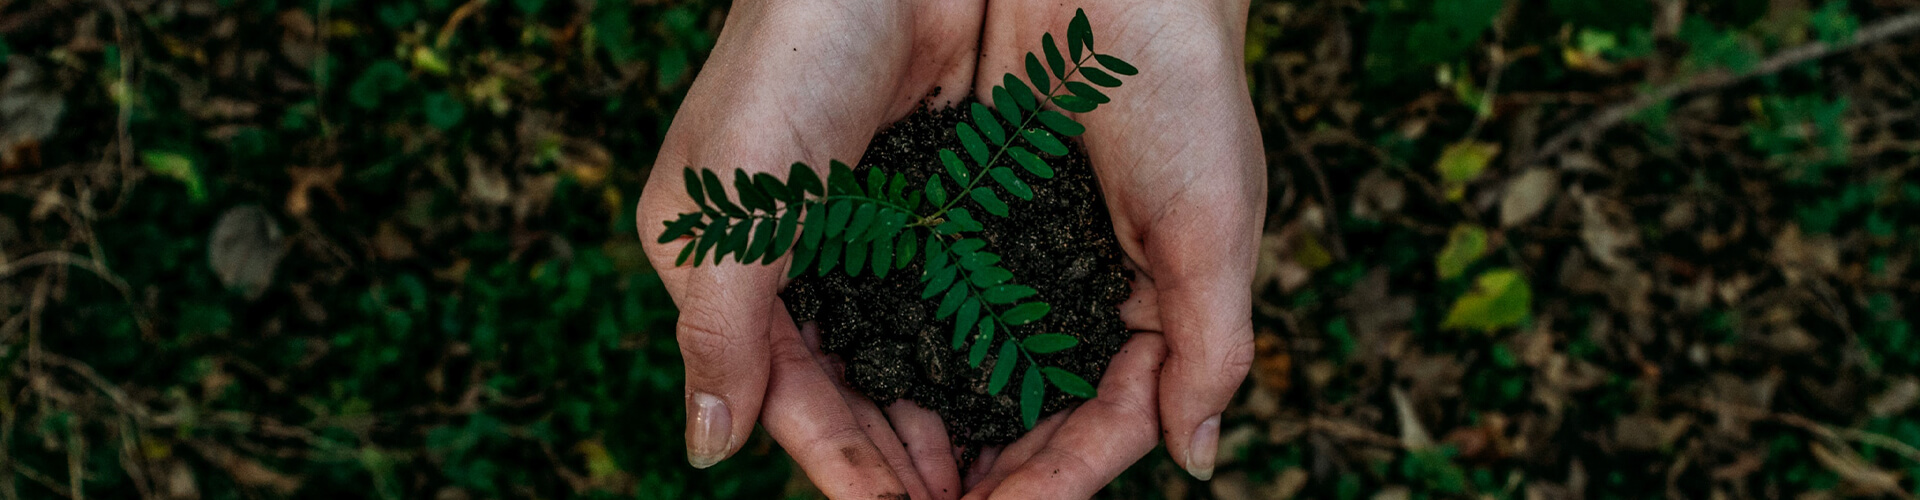 hands holding dirt